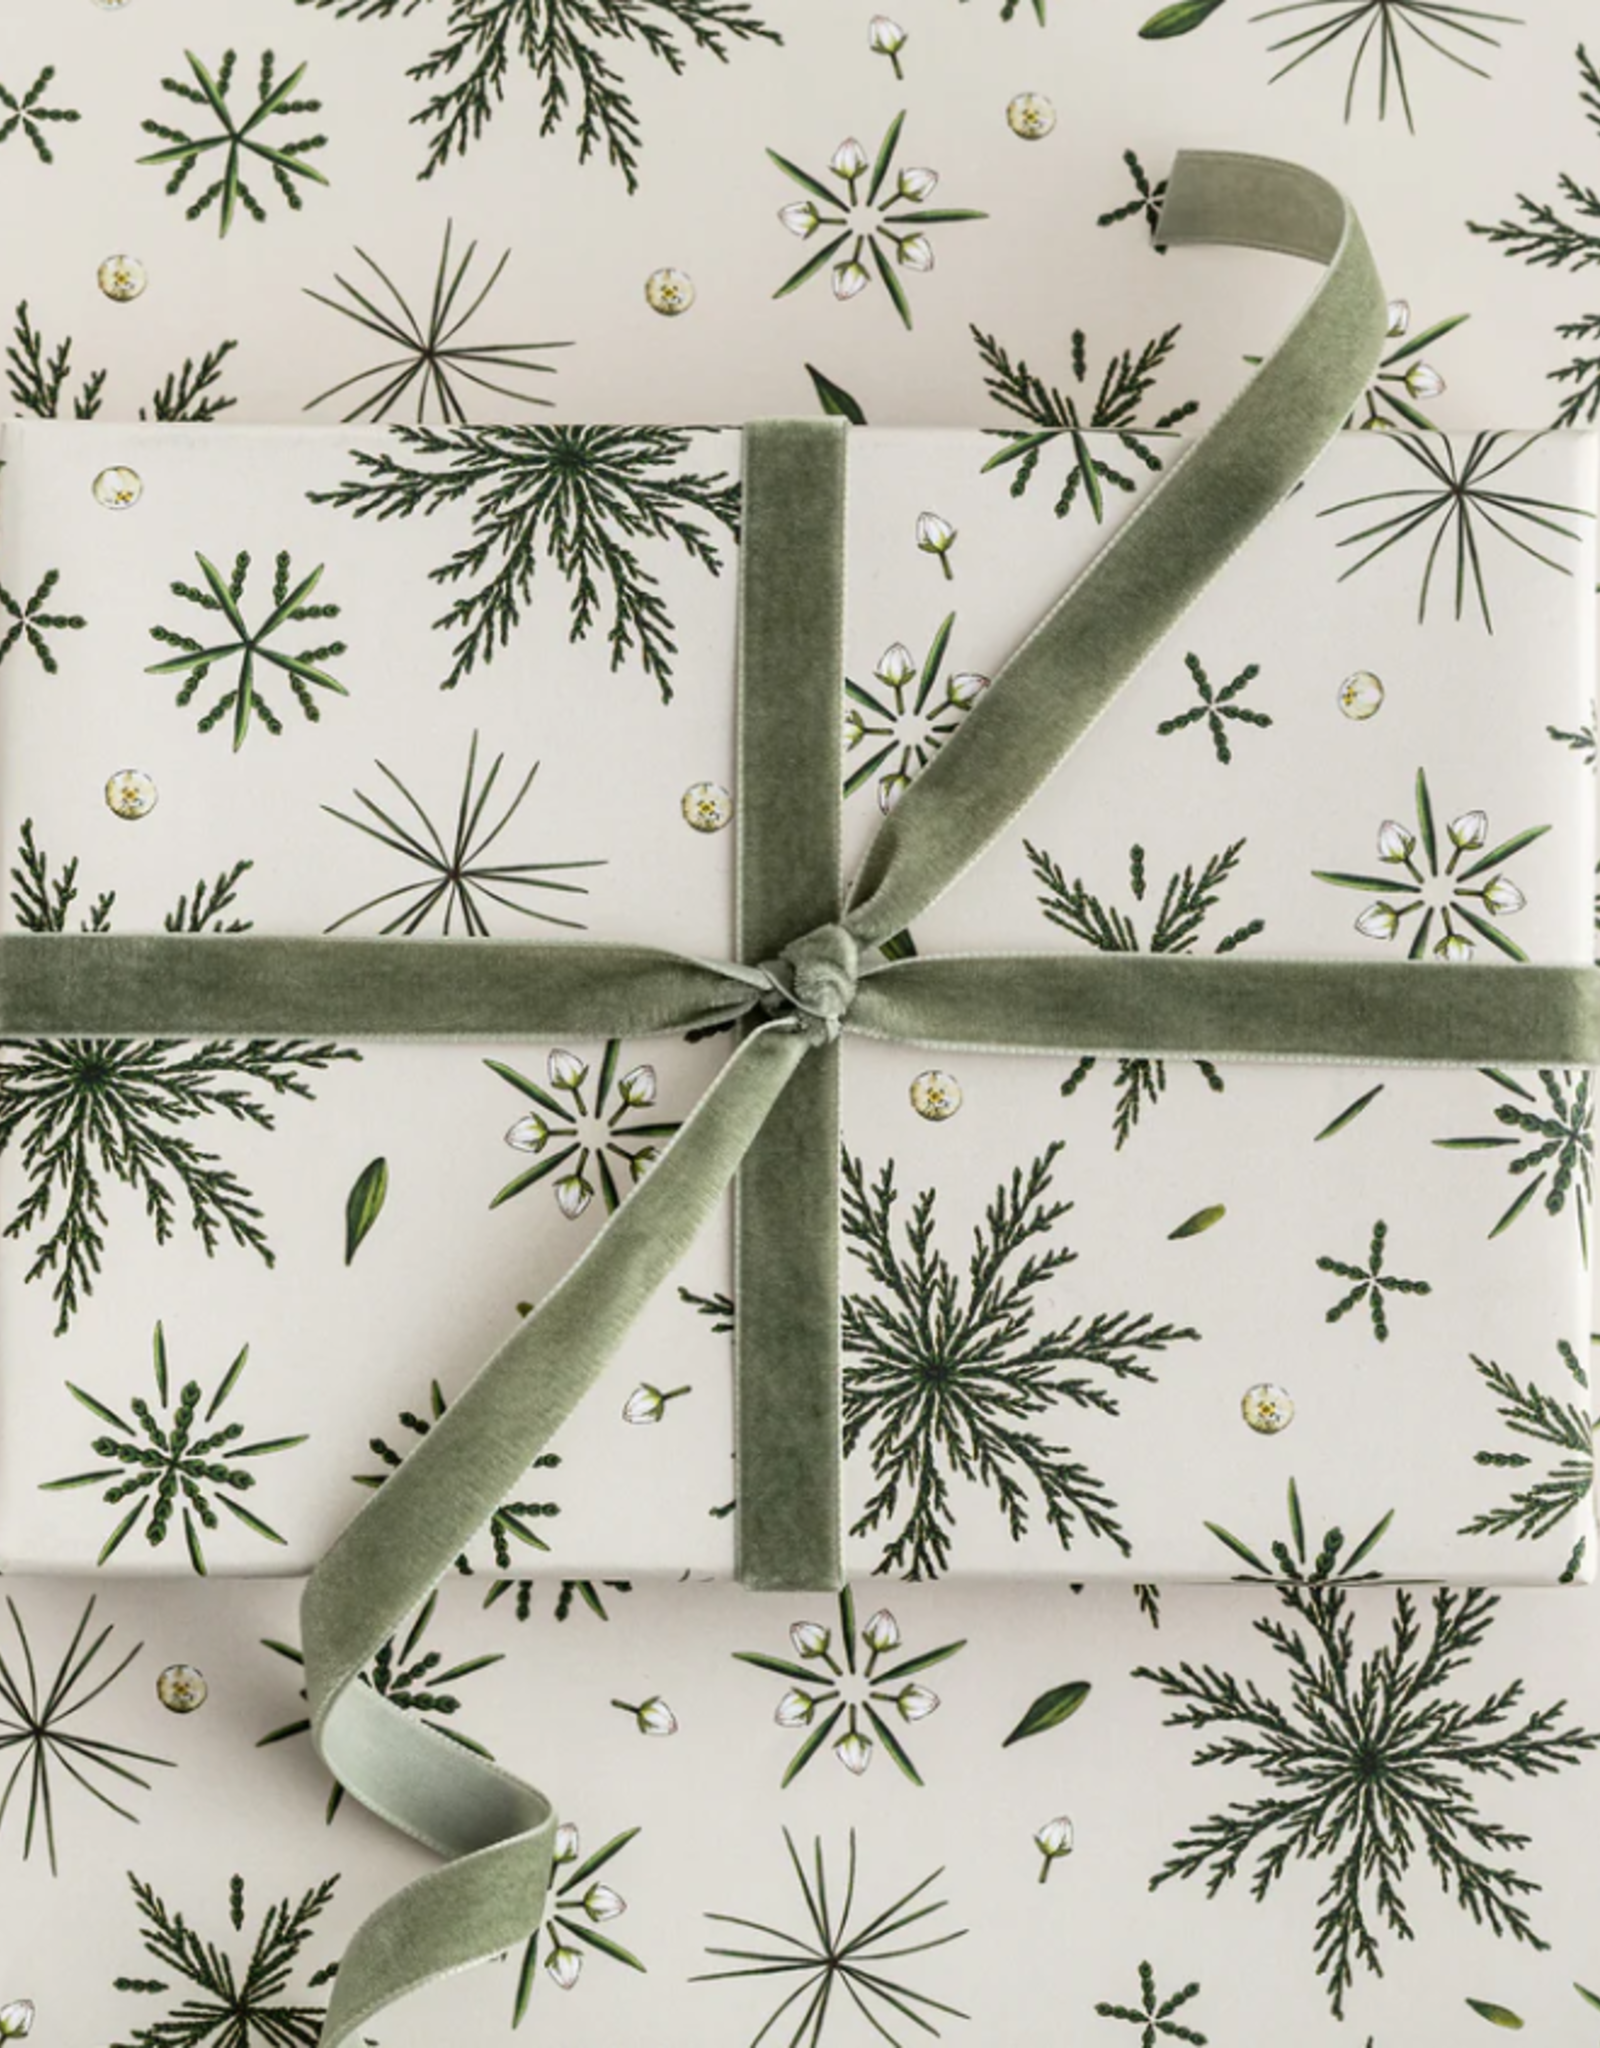 Catherine Lewis Design Festive foliage-ivory- Christmas Gift Wrap